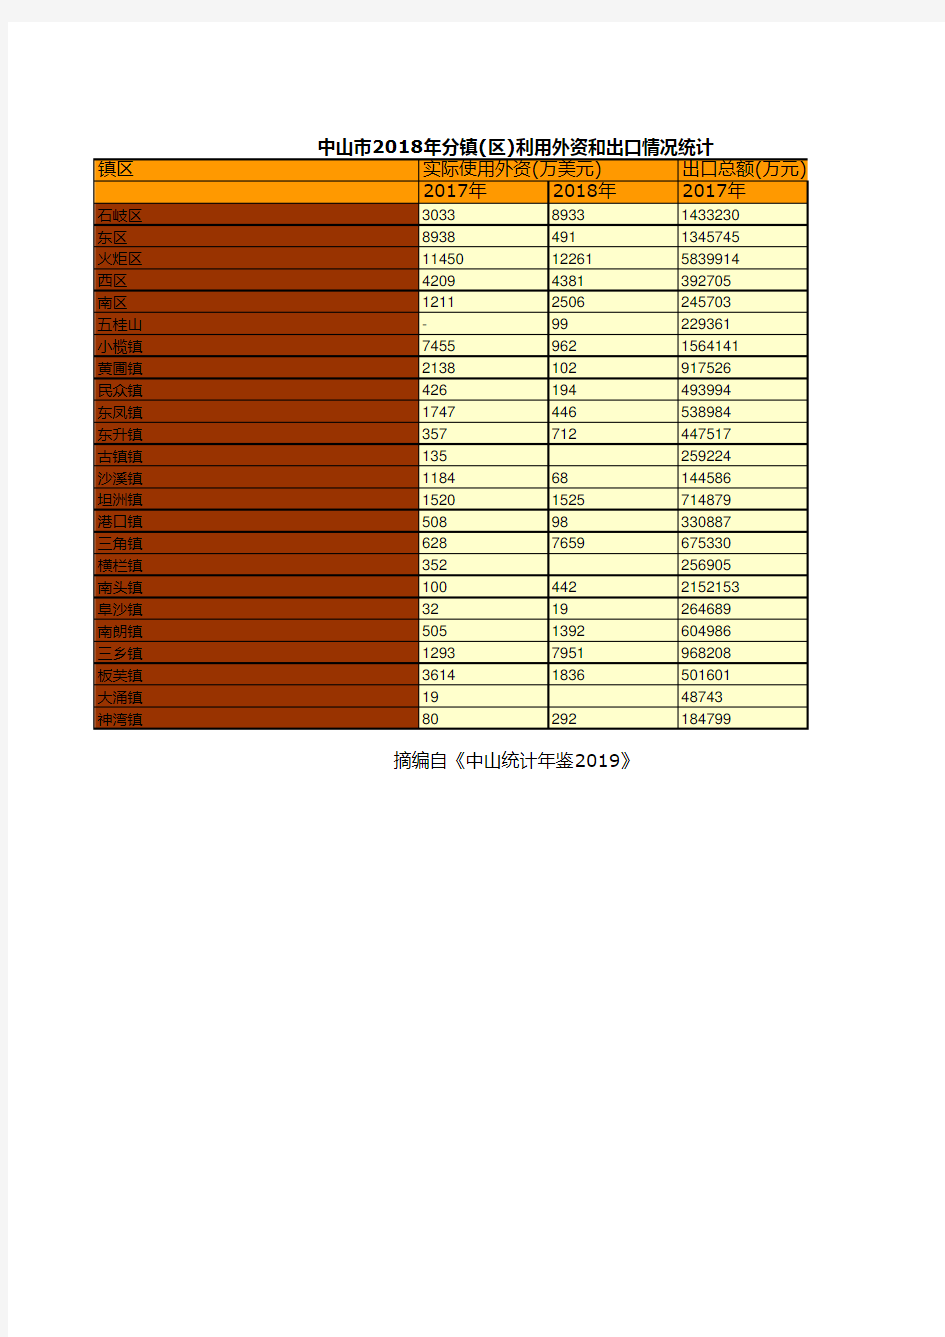 中山市社会经济发展统计年鉴指标数据：2018年分镇(区)利用外资和出口情况统计